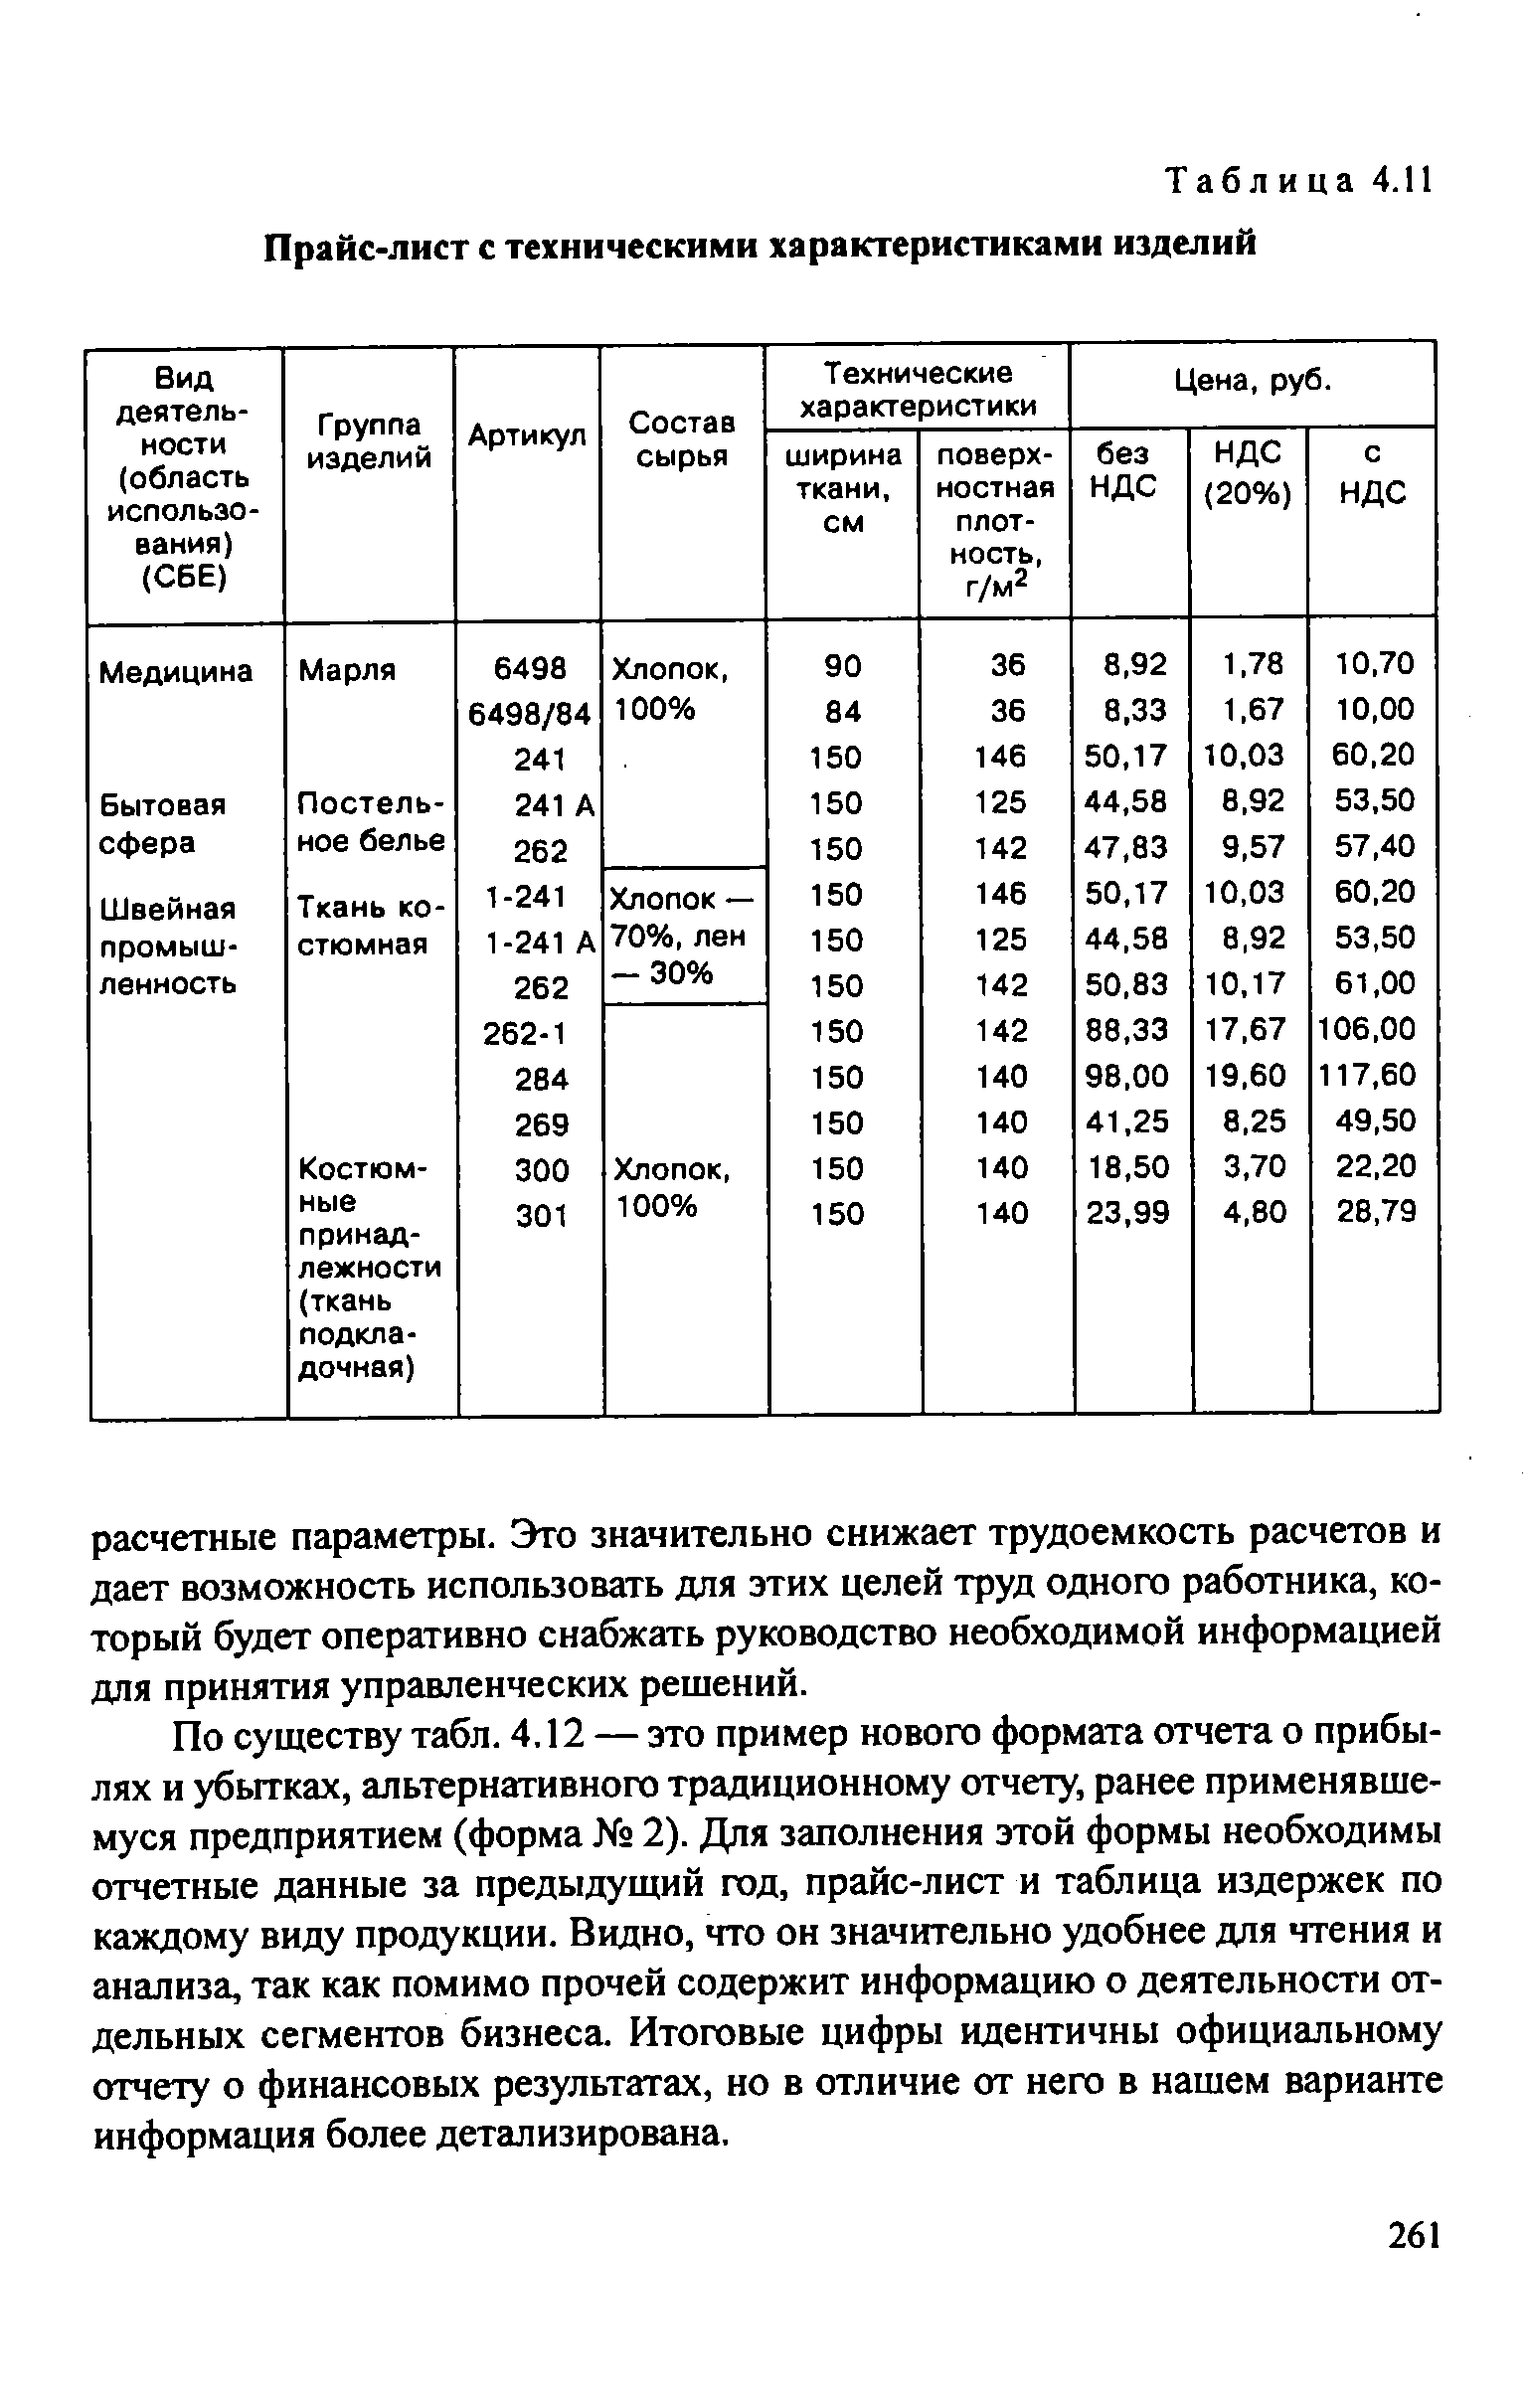 Таблица 4.11 Прайс-лист с техническими характеристиками изделий
